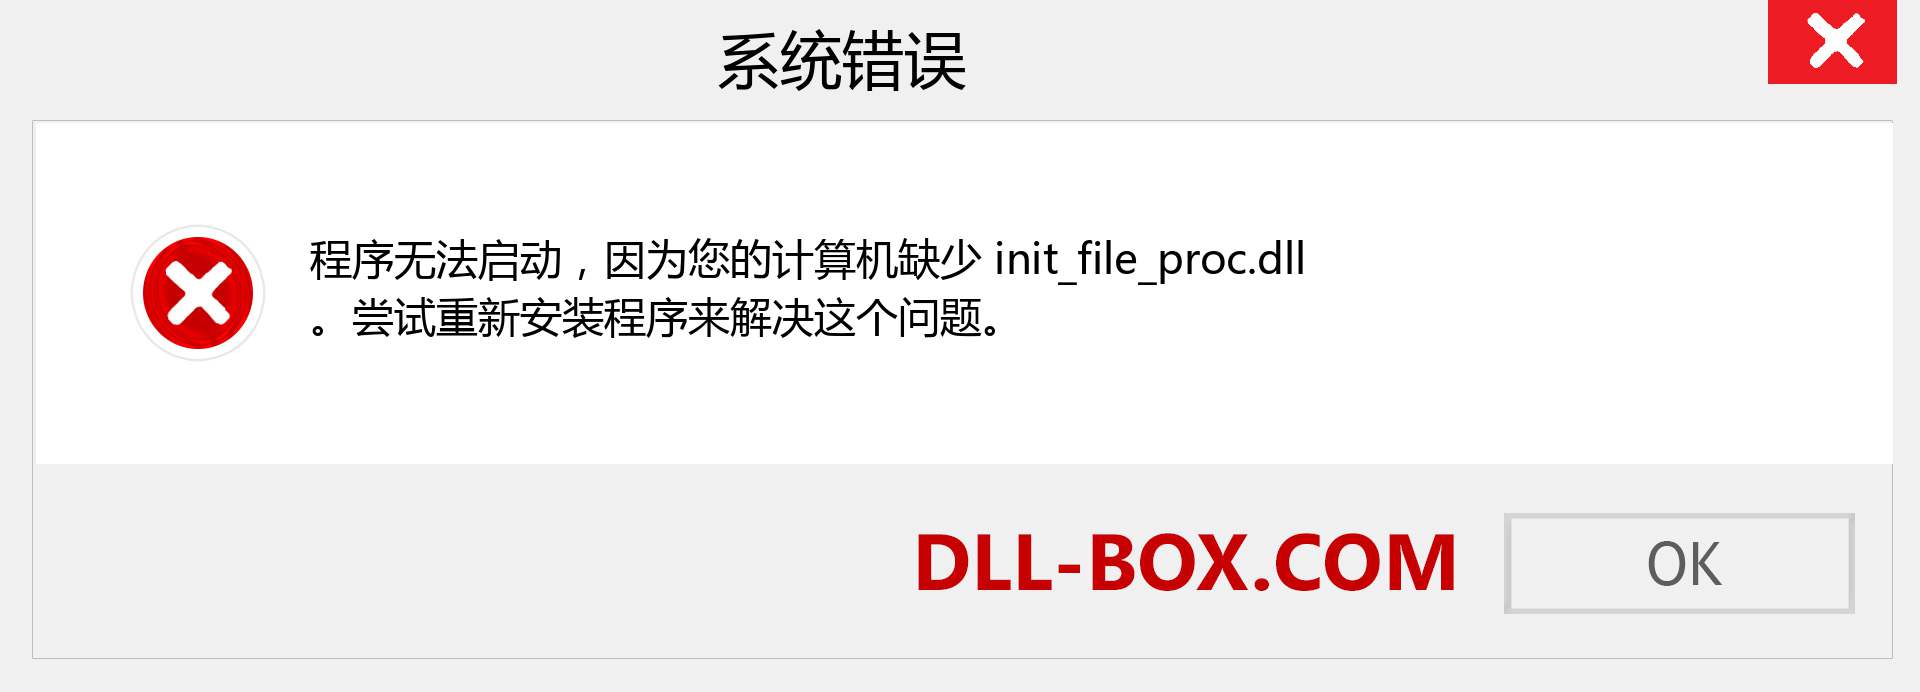 init_file_proc.dll 文件丢失？。 适用于 Windows 7、8、10 的下载 - 修复 Windows、照片、图像上的 init_file_proc dll 丢失错误